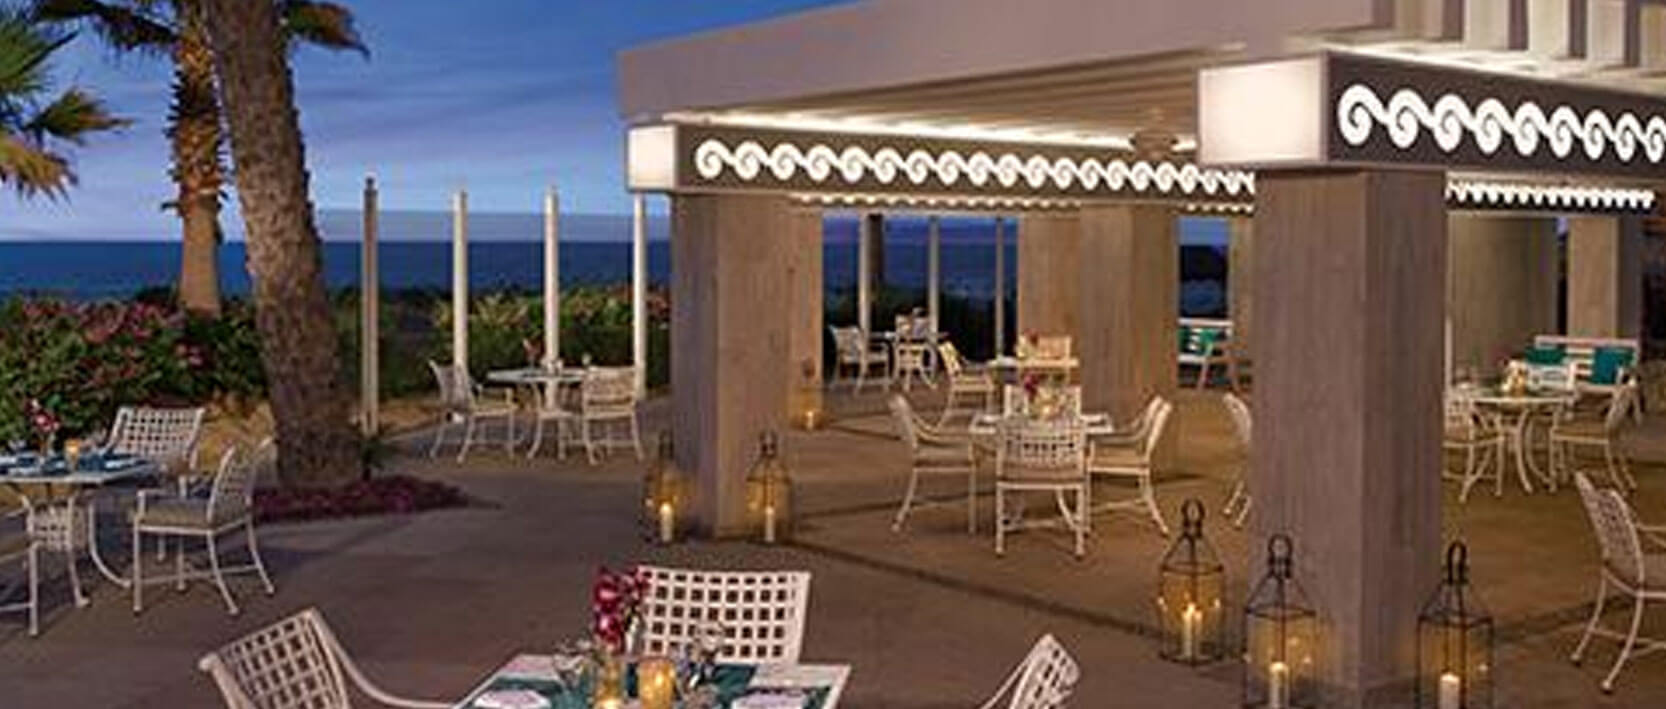 Dreams Los Cabos Suites Restaurants and Bars - Portofino